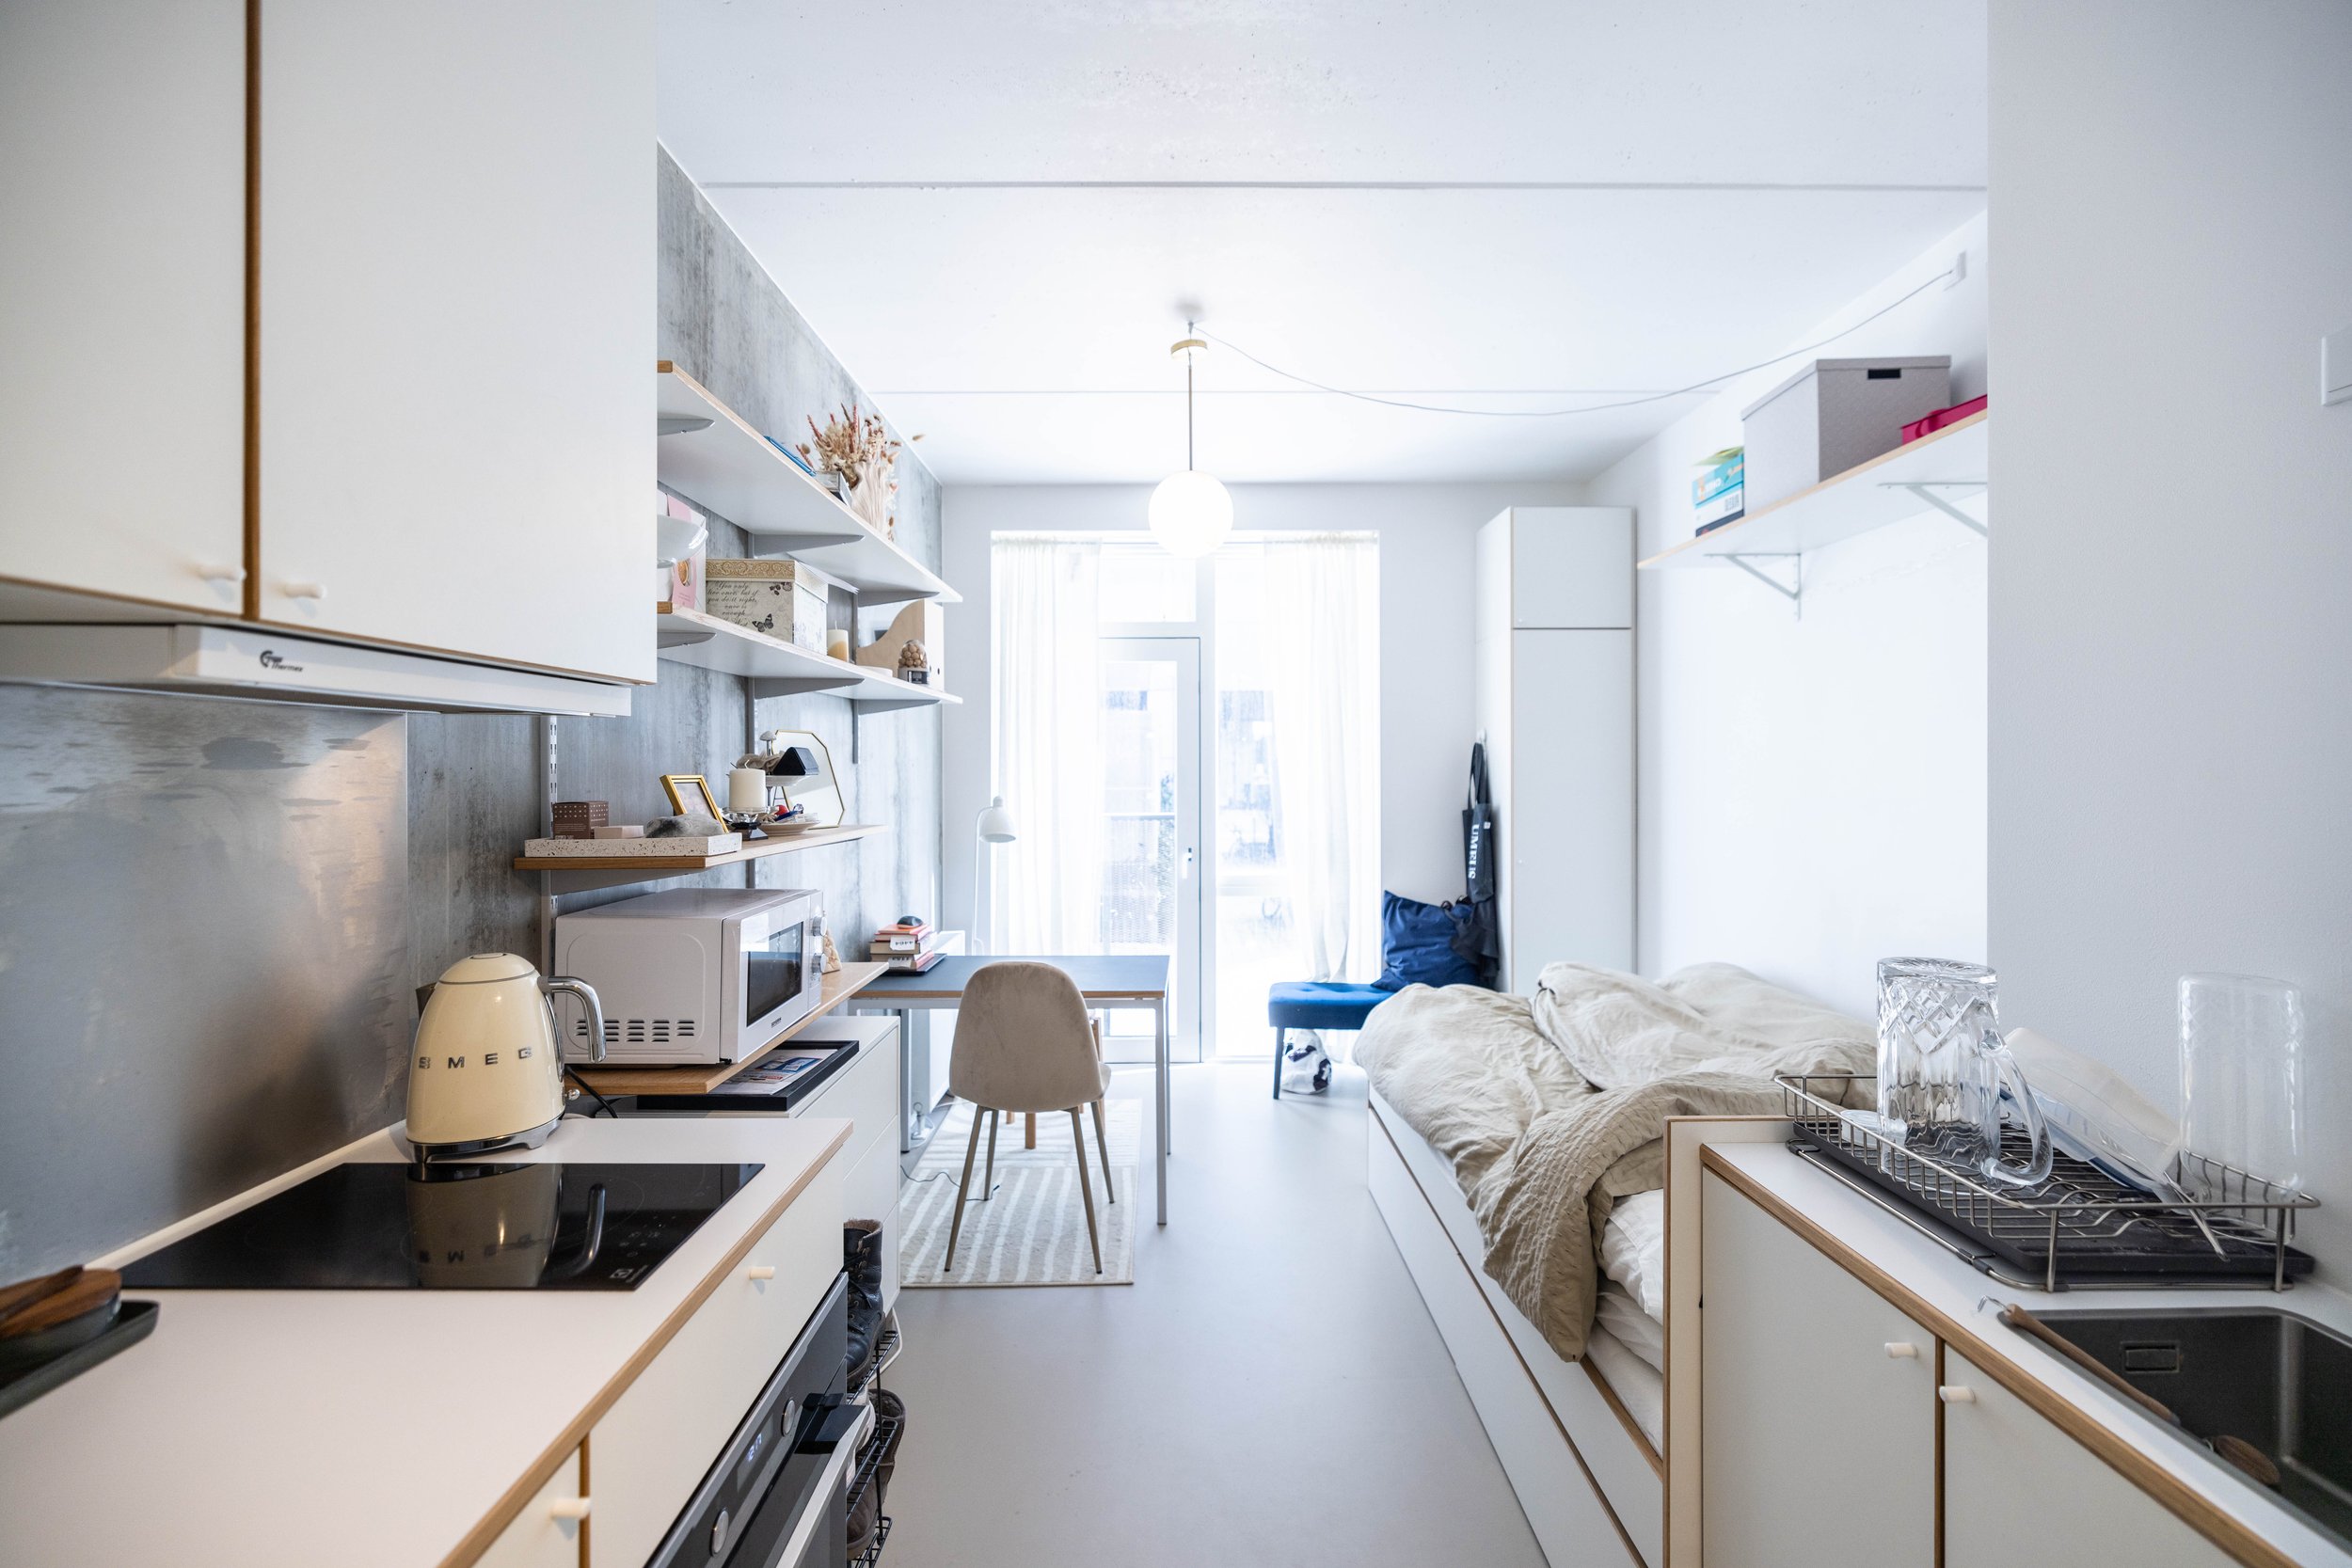 NREP - UMEUS - Nordhavn - studio w. kitchen - 1.jpg